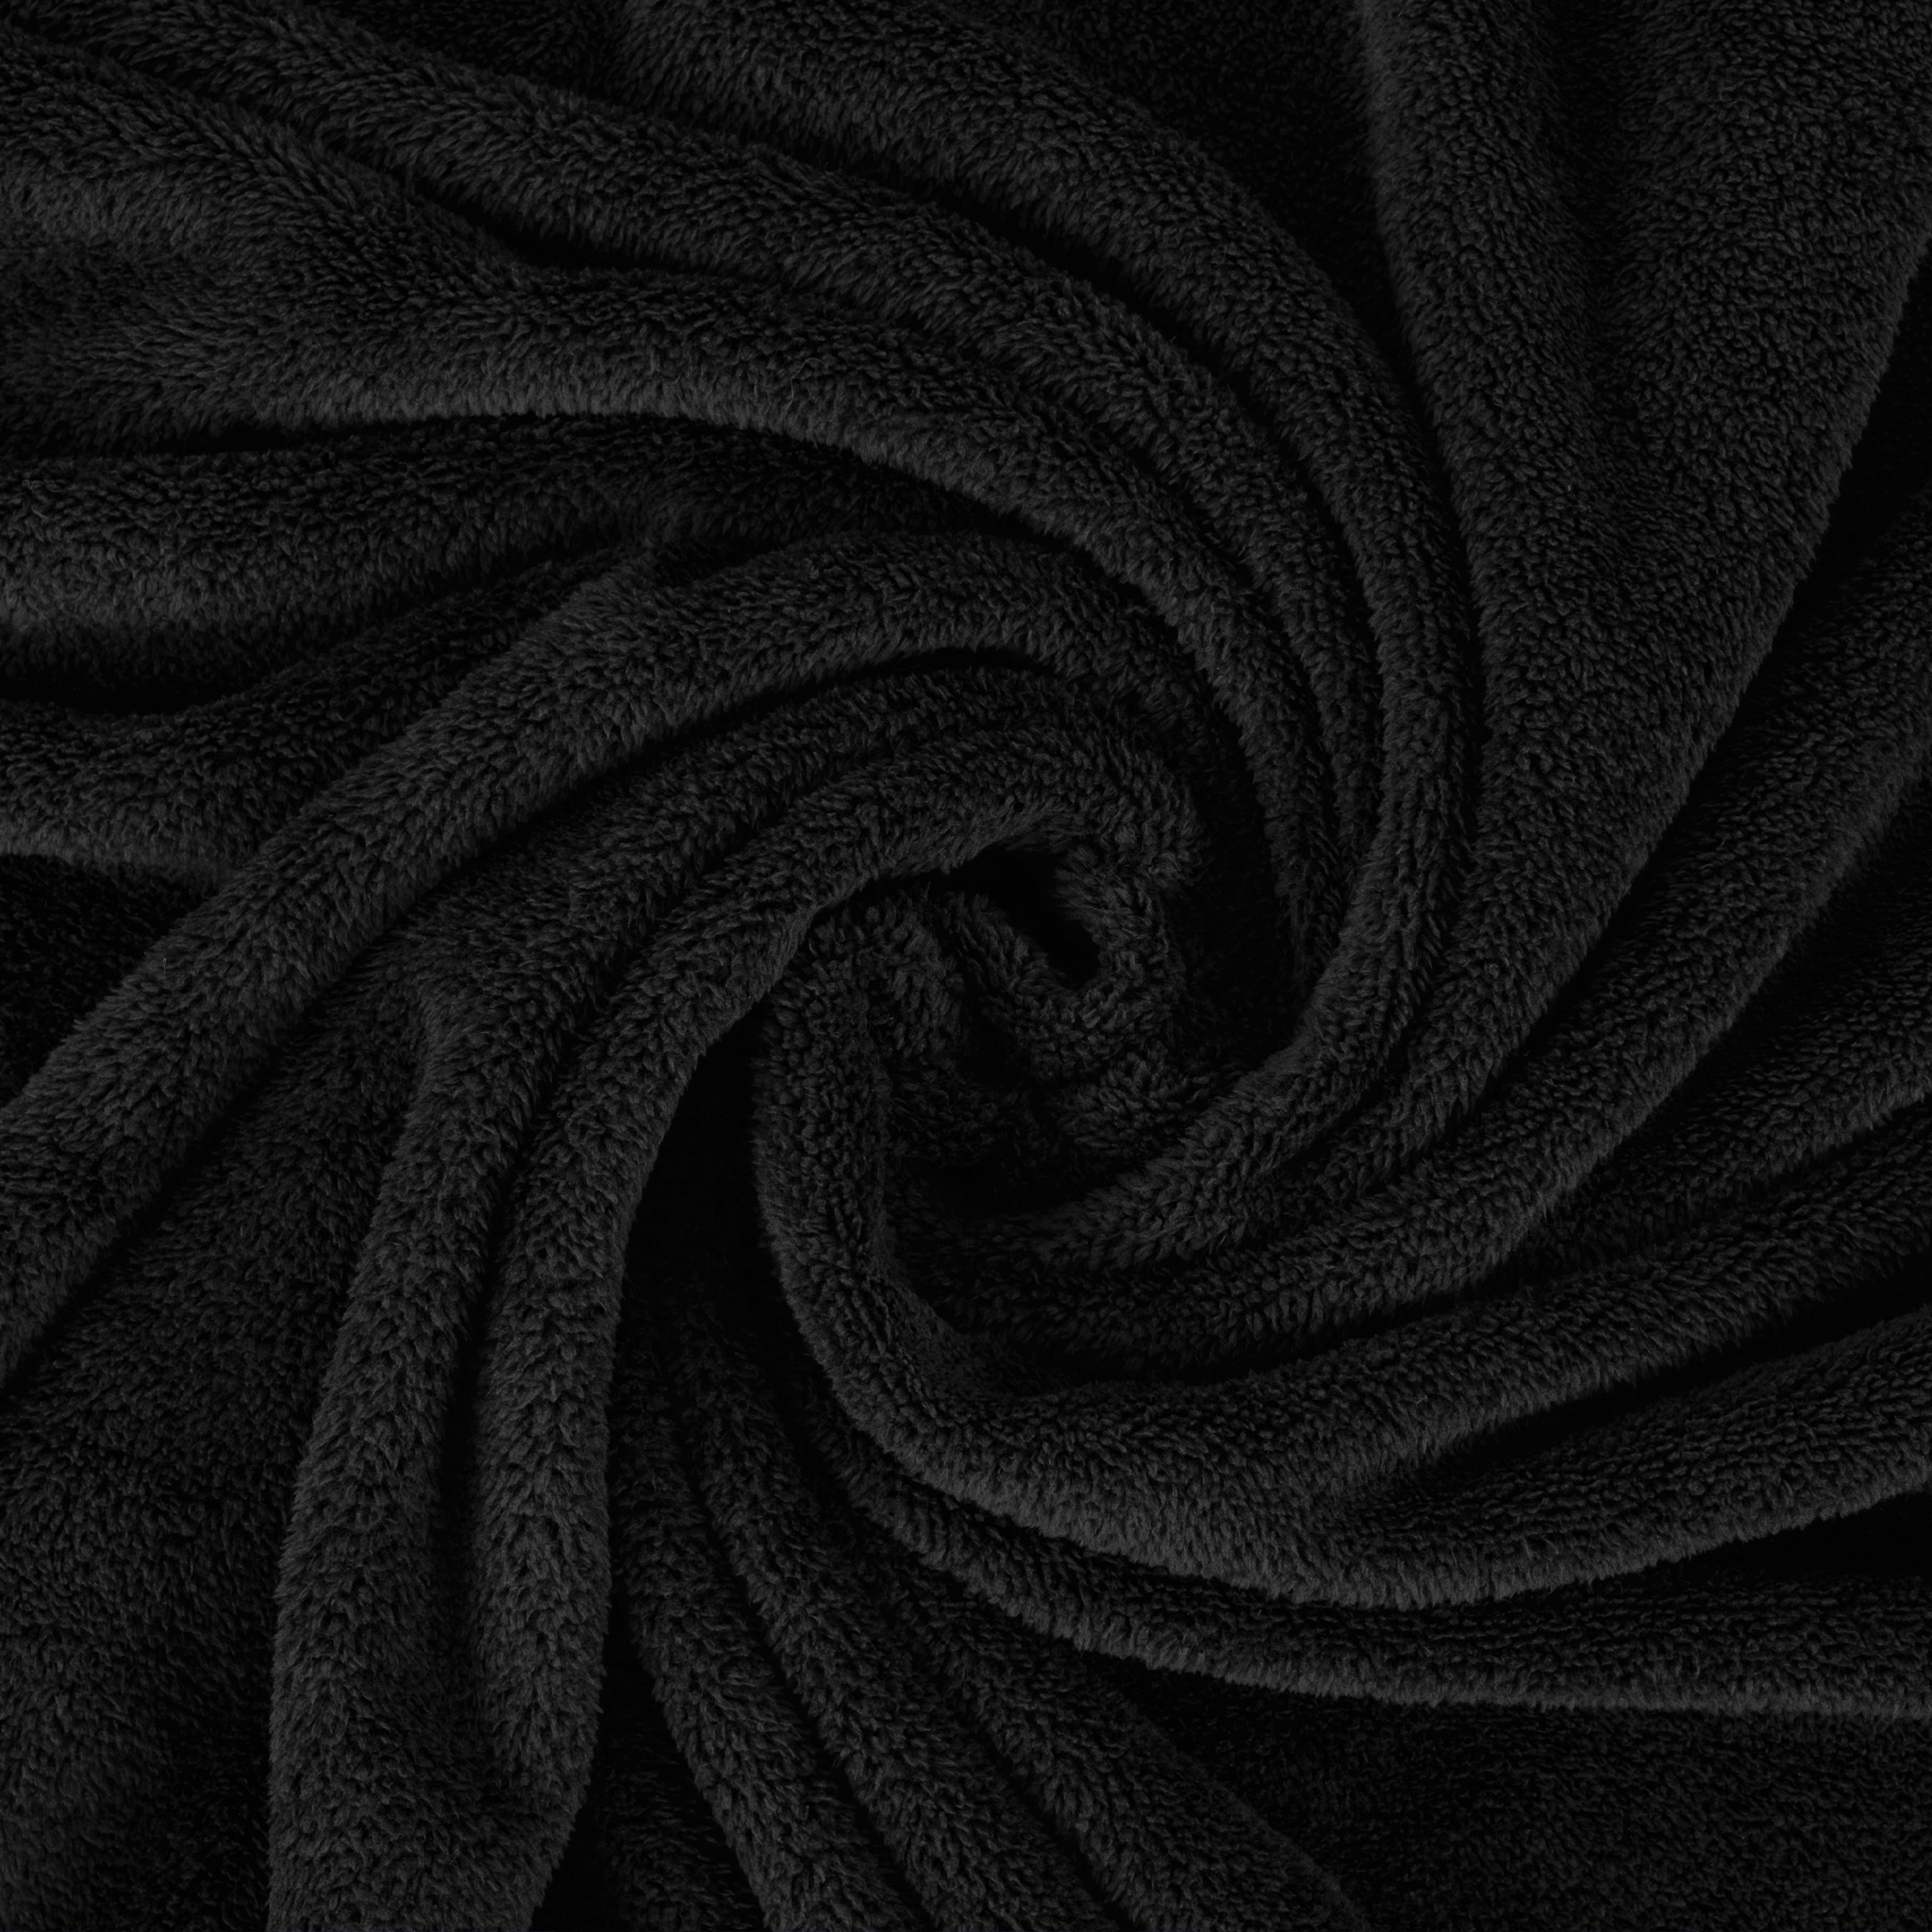 American Soft Linen - Bedding Fleece Blanket - Queen Size 85x90 inches - Black - 5